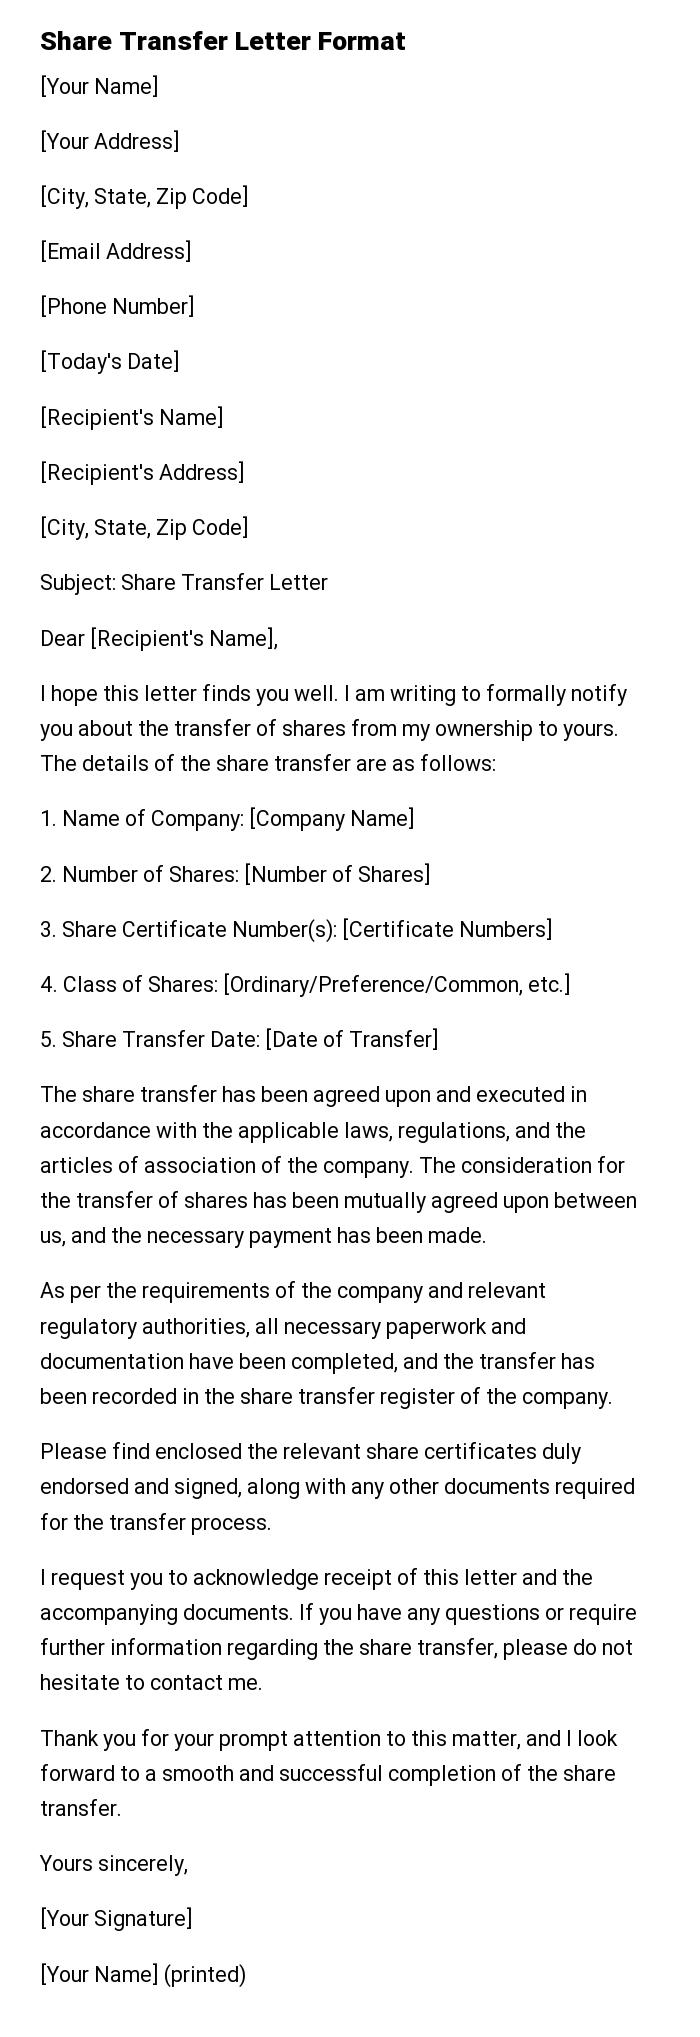 Share Transfer Letter Format